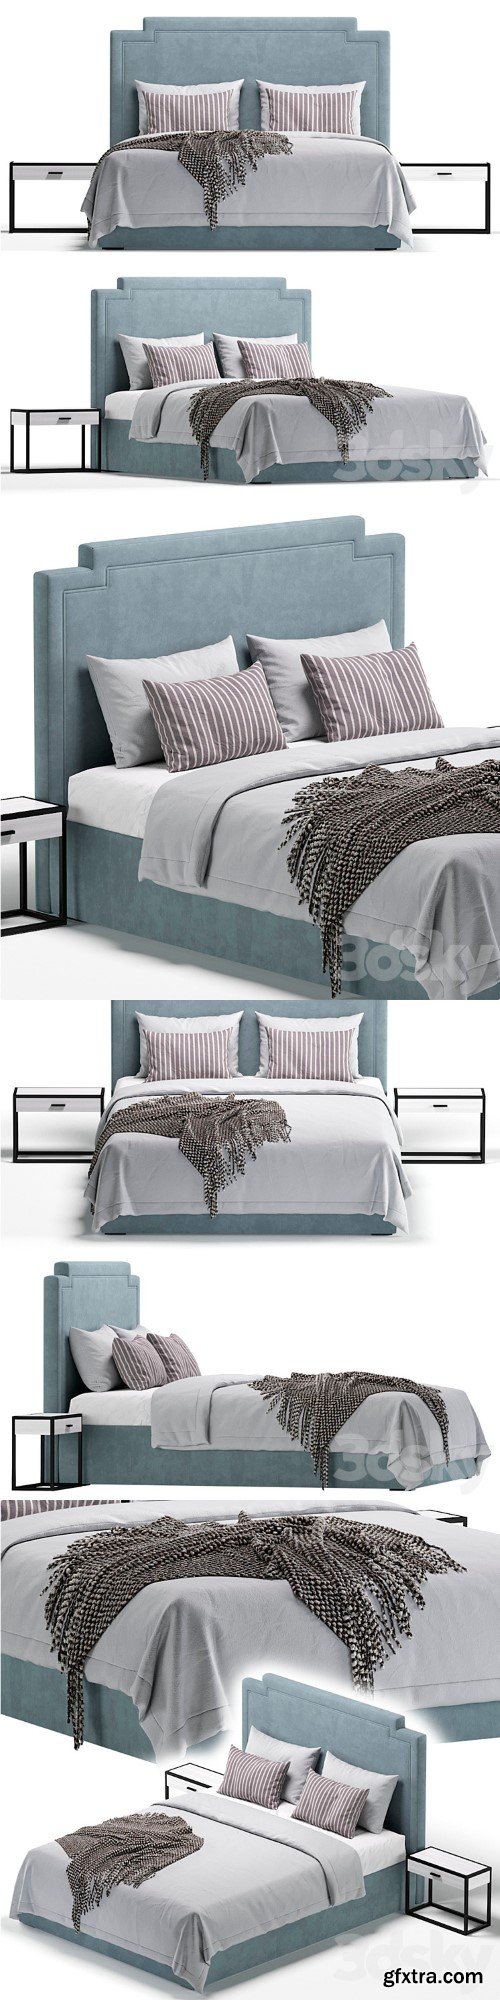 Bed MANTON by Cazarina Interiors/Bed MANTON